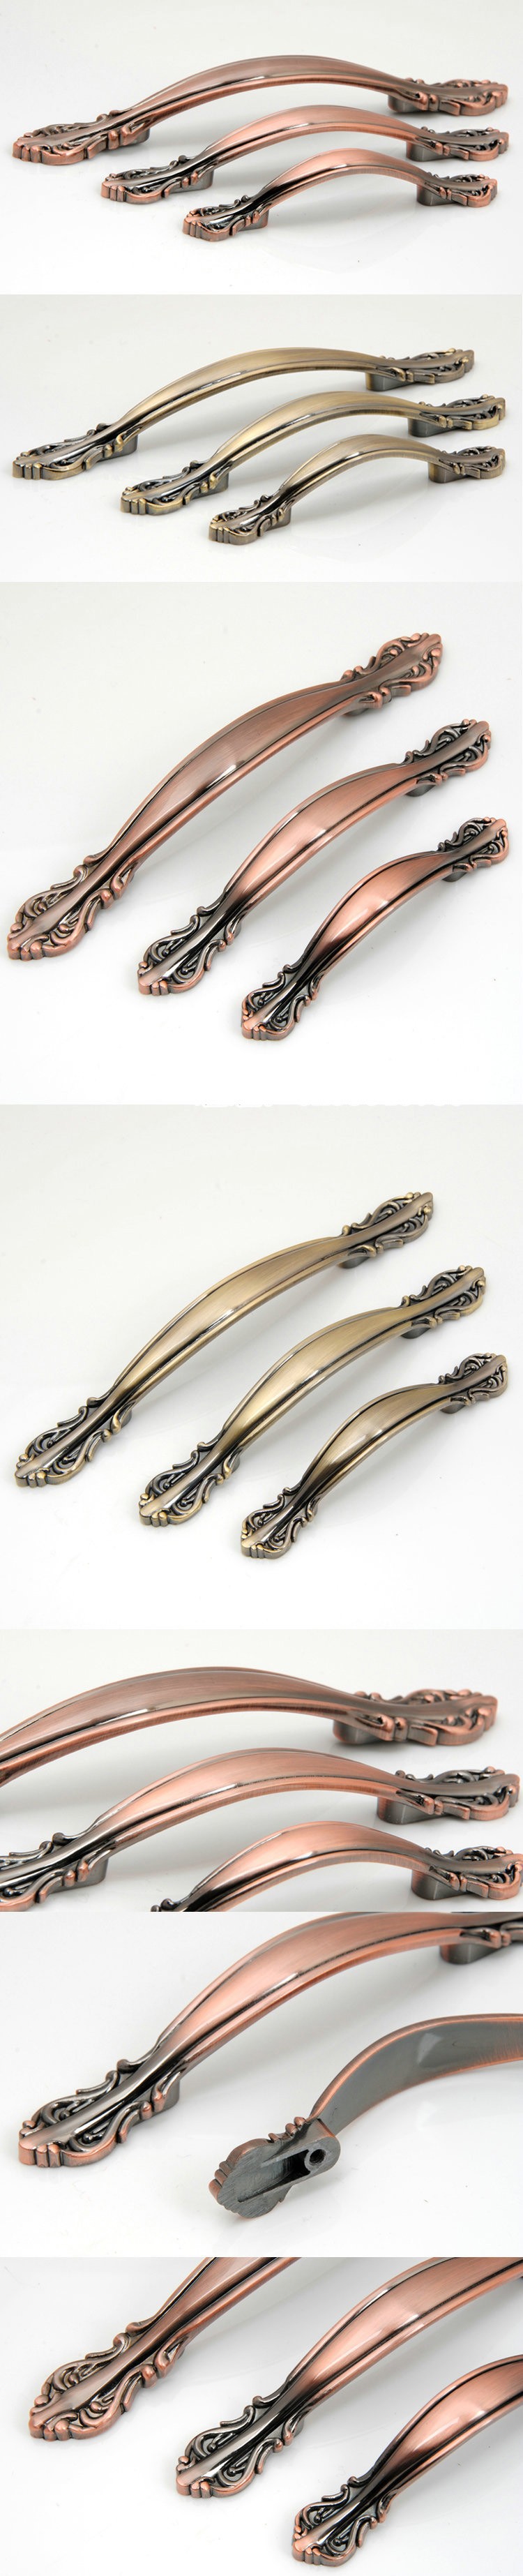 128mm Antique bronze door handles and knobs/ drawer pulls &knobs